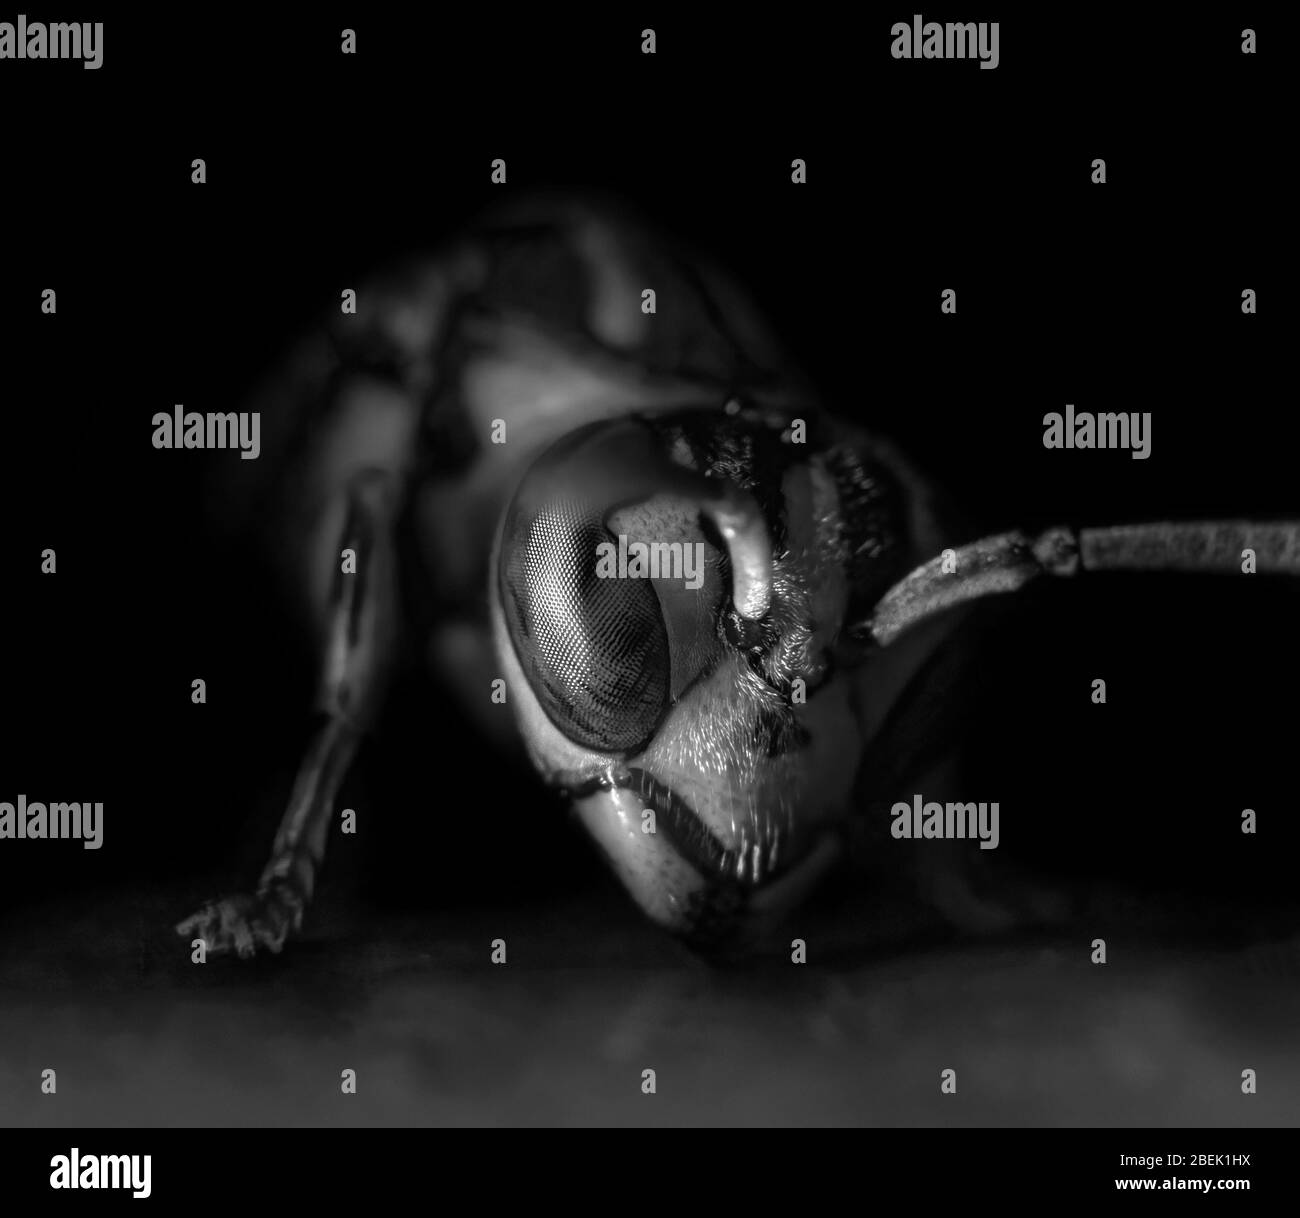 Macro Photographie de tête de Wasp sur le sol, noir et blanc Banque D'Images